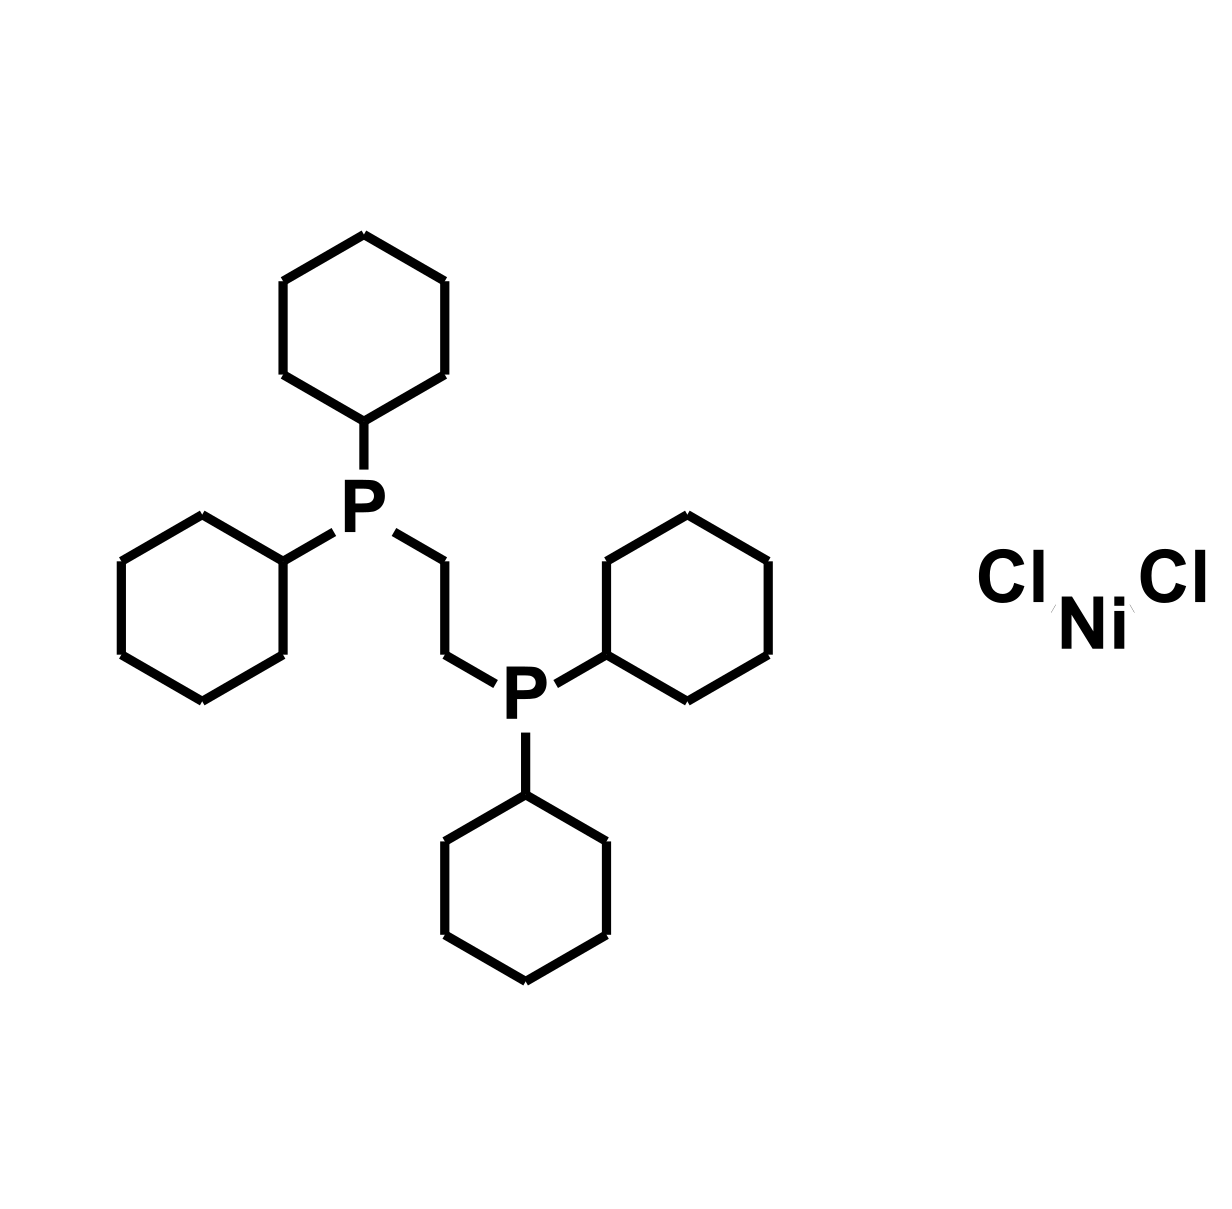 (1,2-Bis(dicyclohexylphosphino)ethane)dichloronickel(II) - CAS:96555-88-3 - (1,2-Bis(dicyclohexylphosphine)ethane)dichloronickel(II), 1,2-Bis(dicyclohexylphosphino)ethane nickel(II) chloride